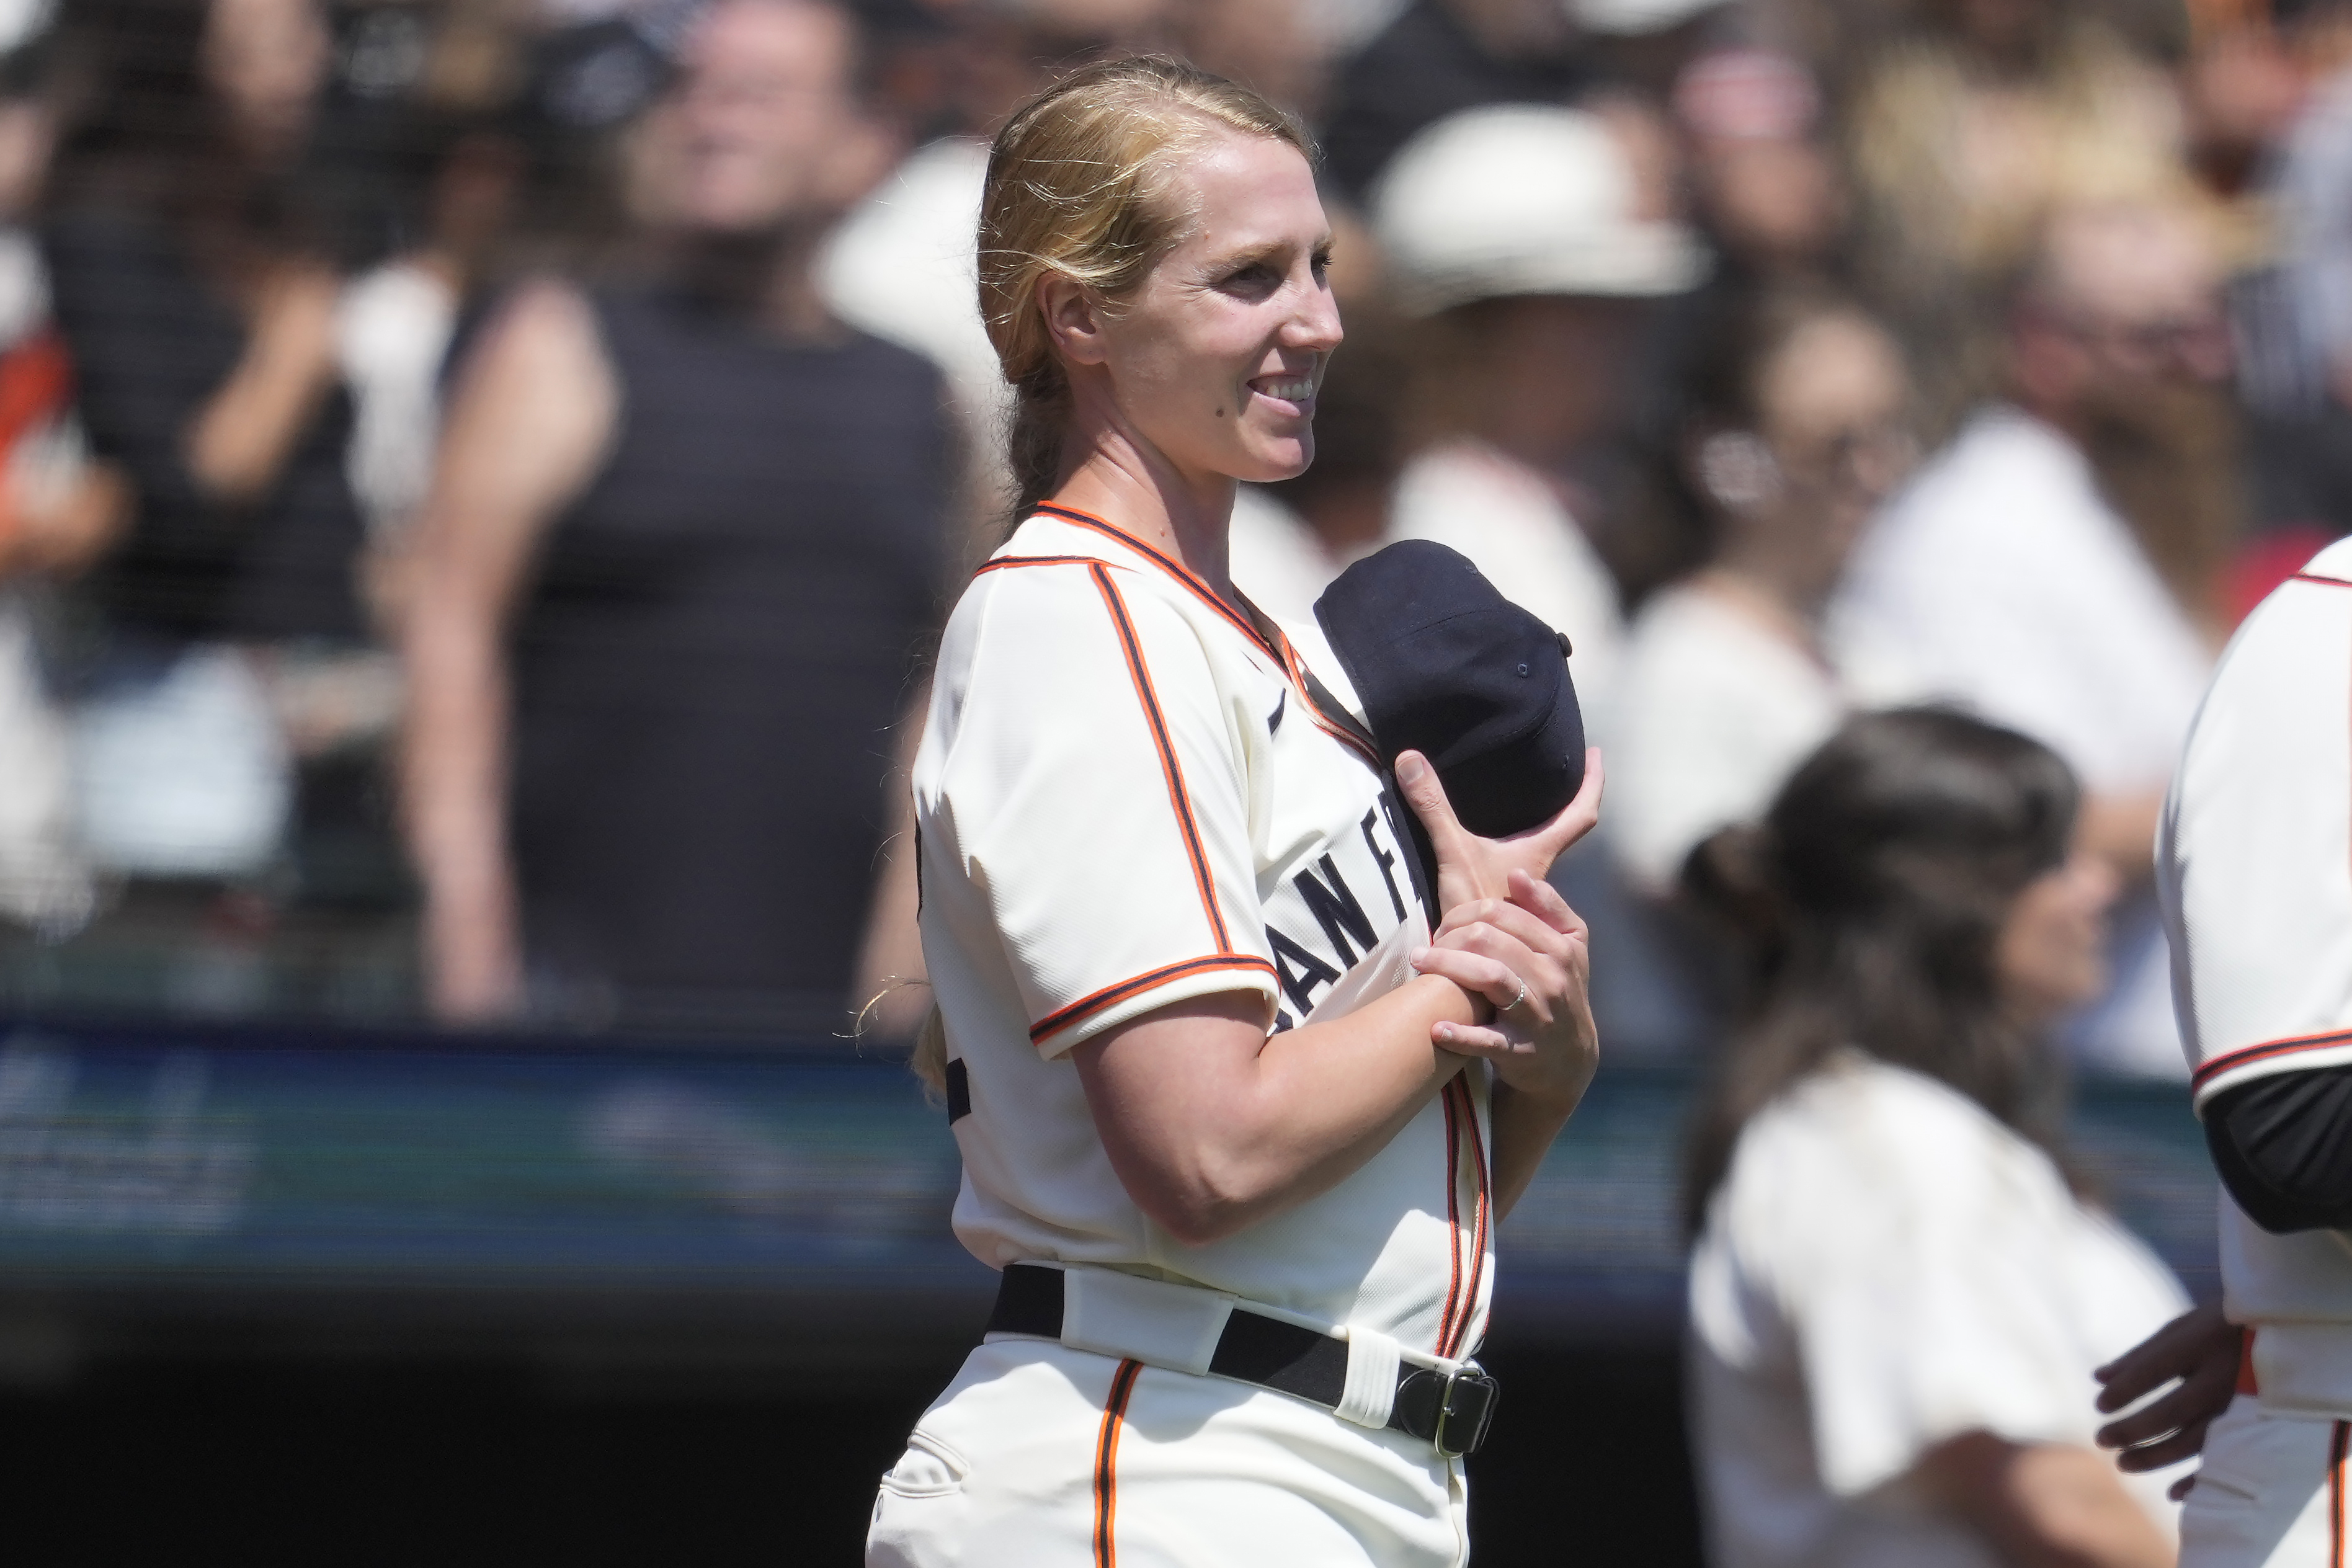 Alyssa Nakken of SF Giants Is First Woman's MLB Coach